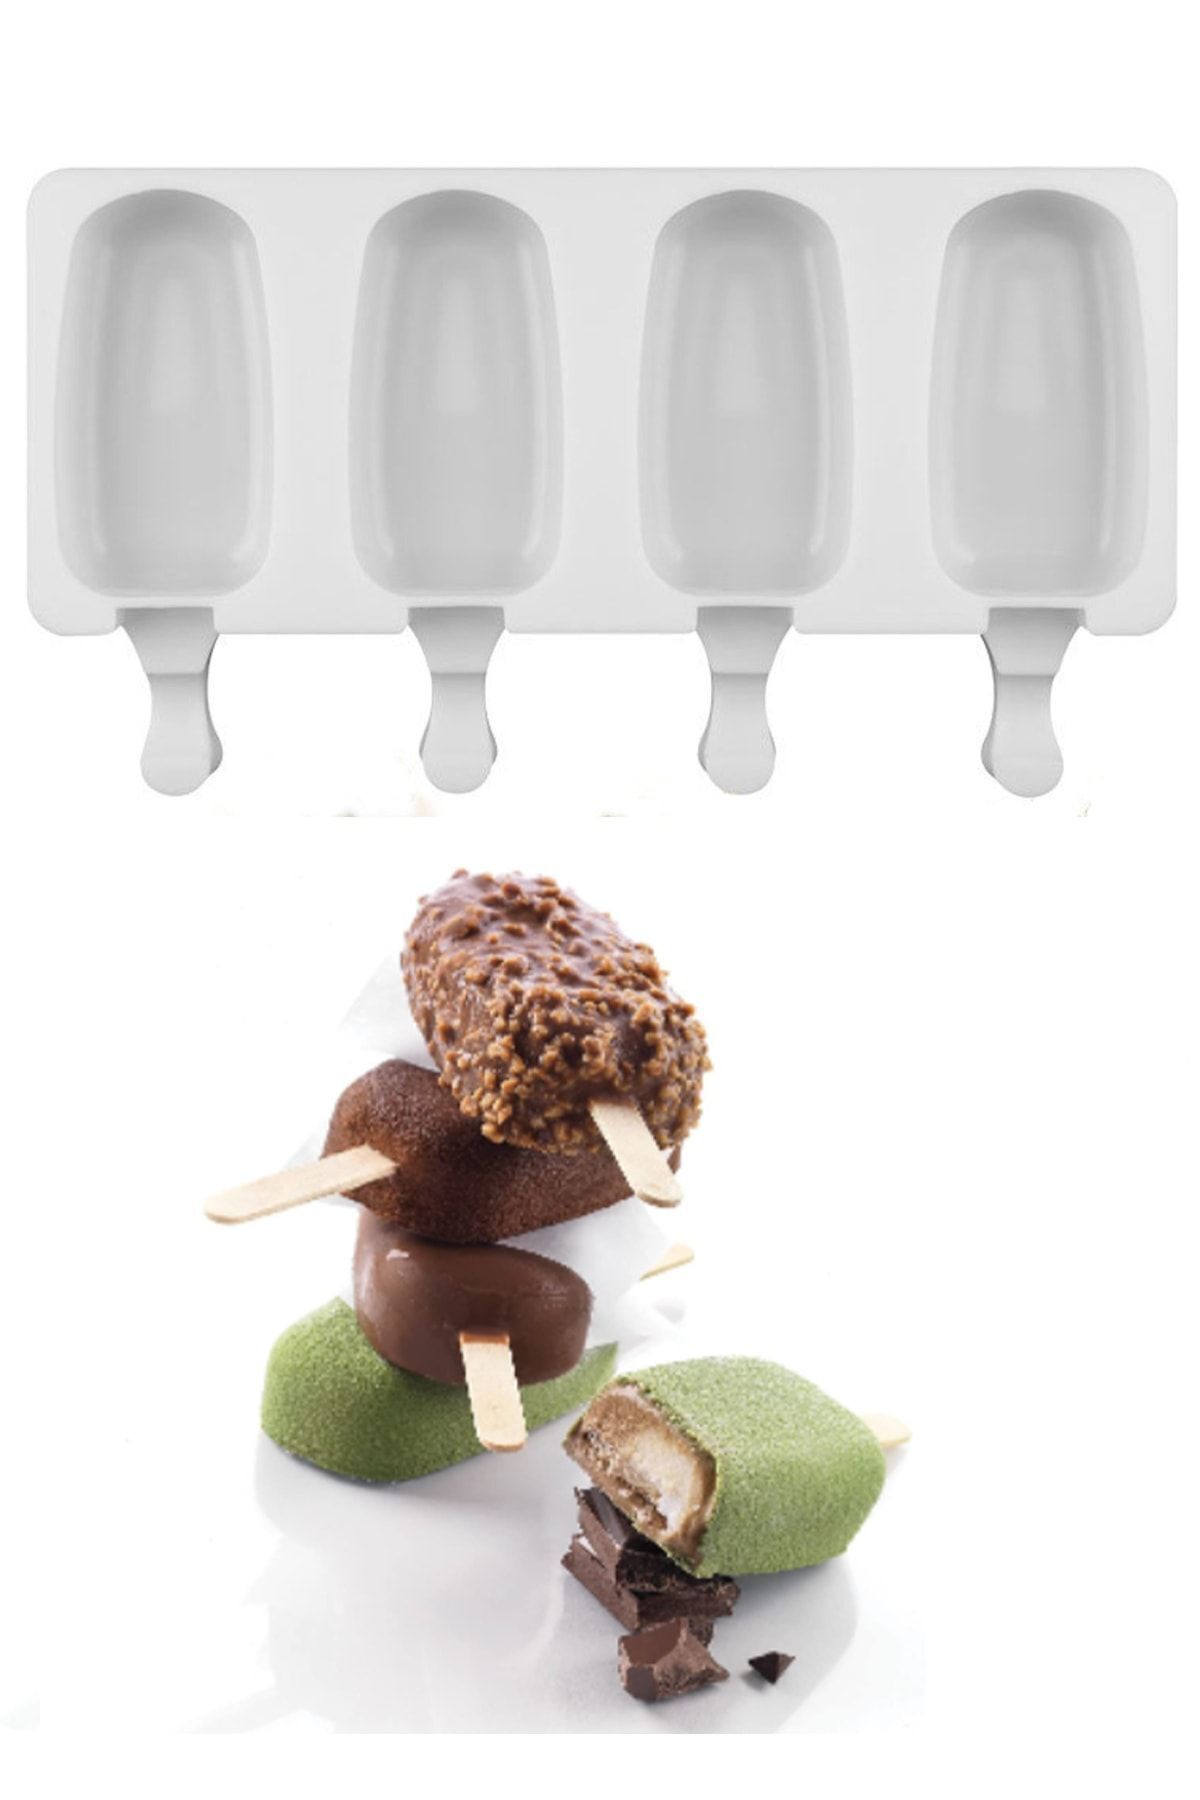 EARABUL Arispa Magnum Dondurma Kalıbı Ve 50 Adet Ahşap Çubuk -4'lü Büyük Boy Pratik Silikon Dondurma Kalıbı